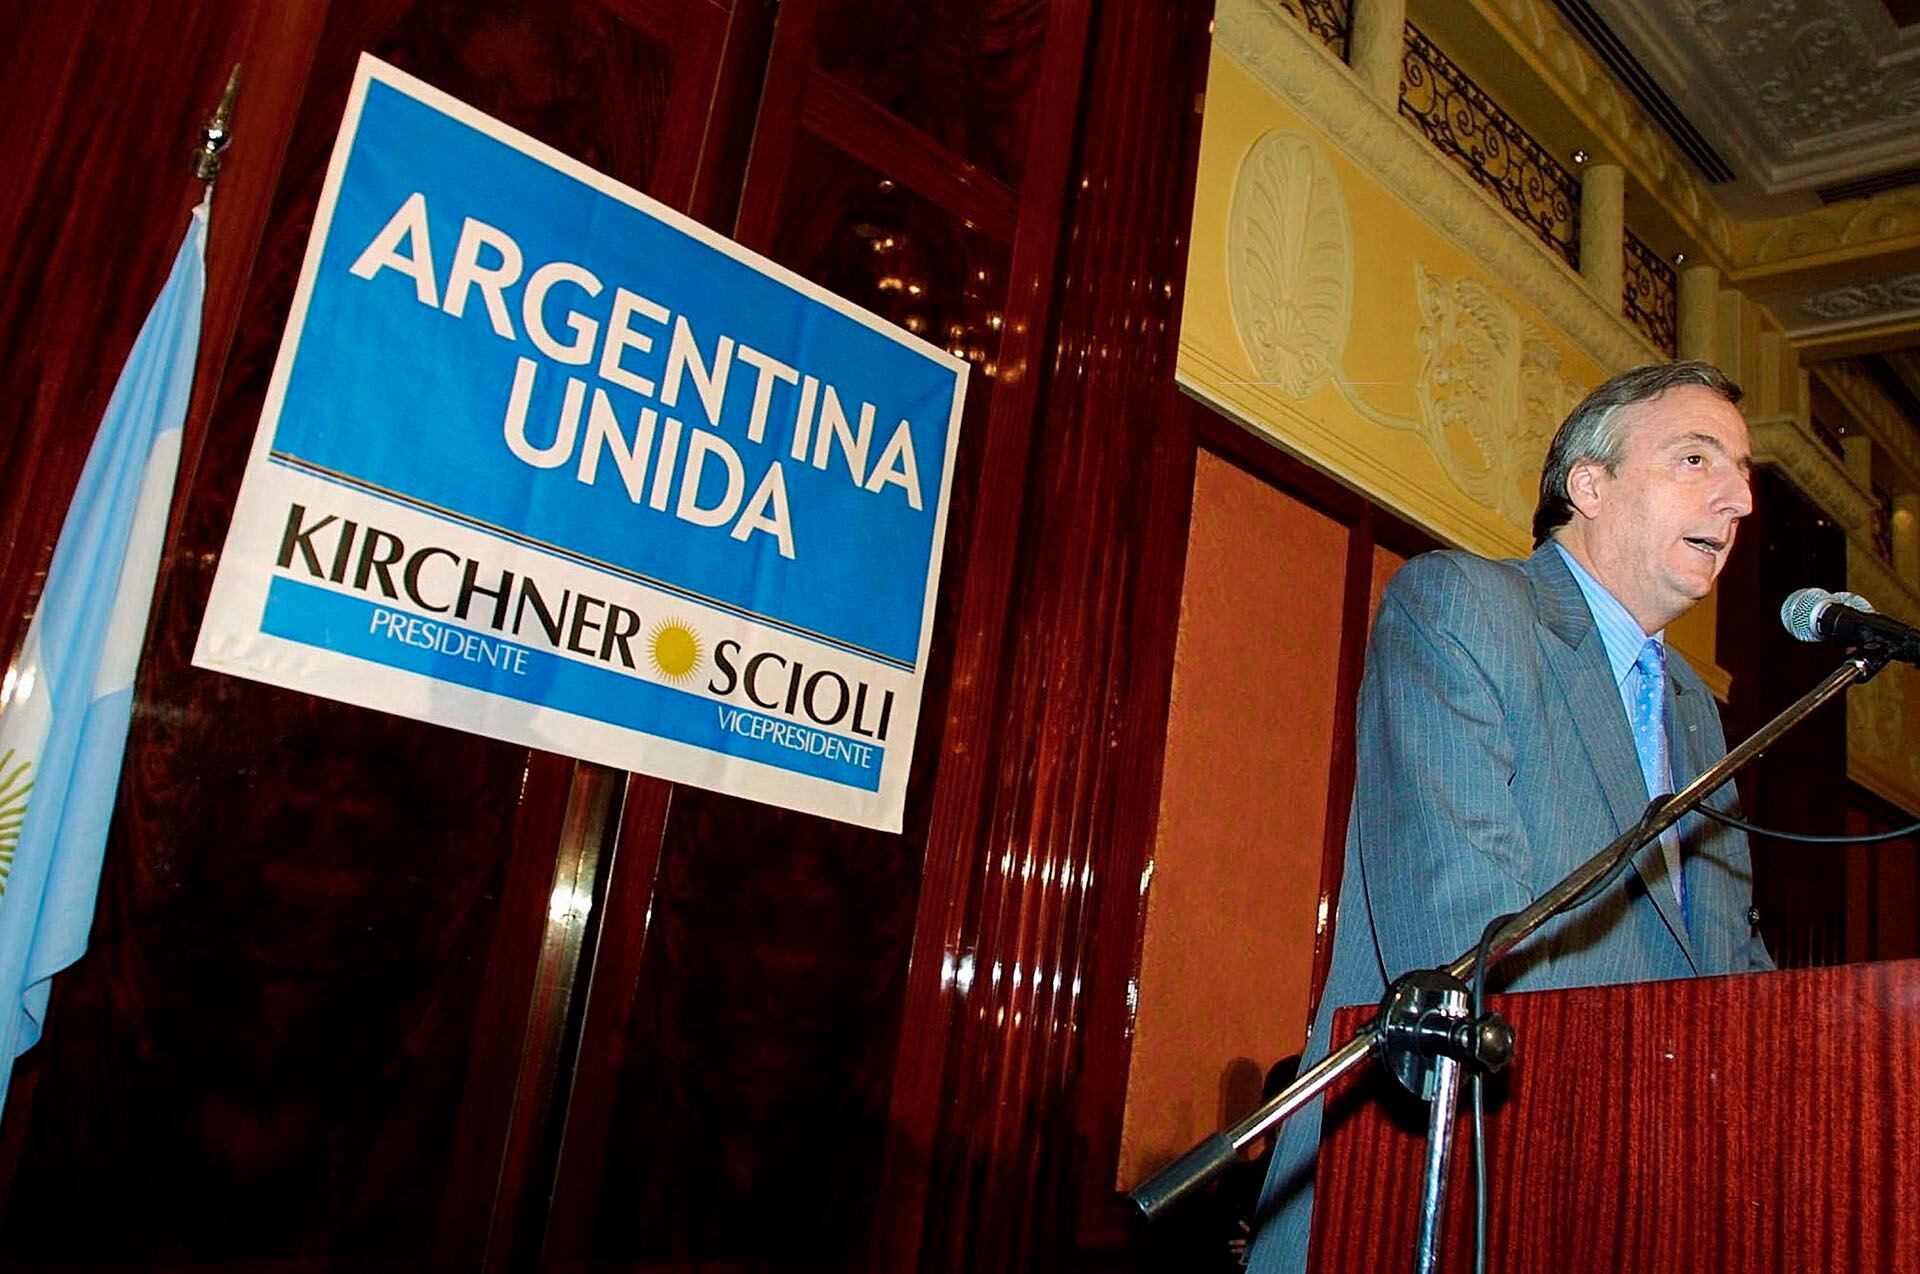 Kirchner accedió a la presidencia en 2003, con el 22,25% de los votos, tras la renuncia de Menem al balotage (Photo by Quique Kierszenbaum/Getty Images)